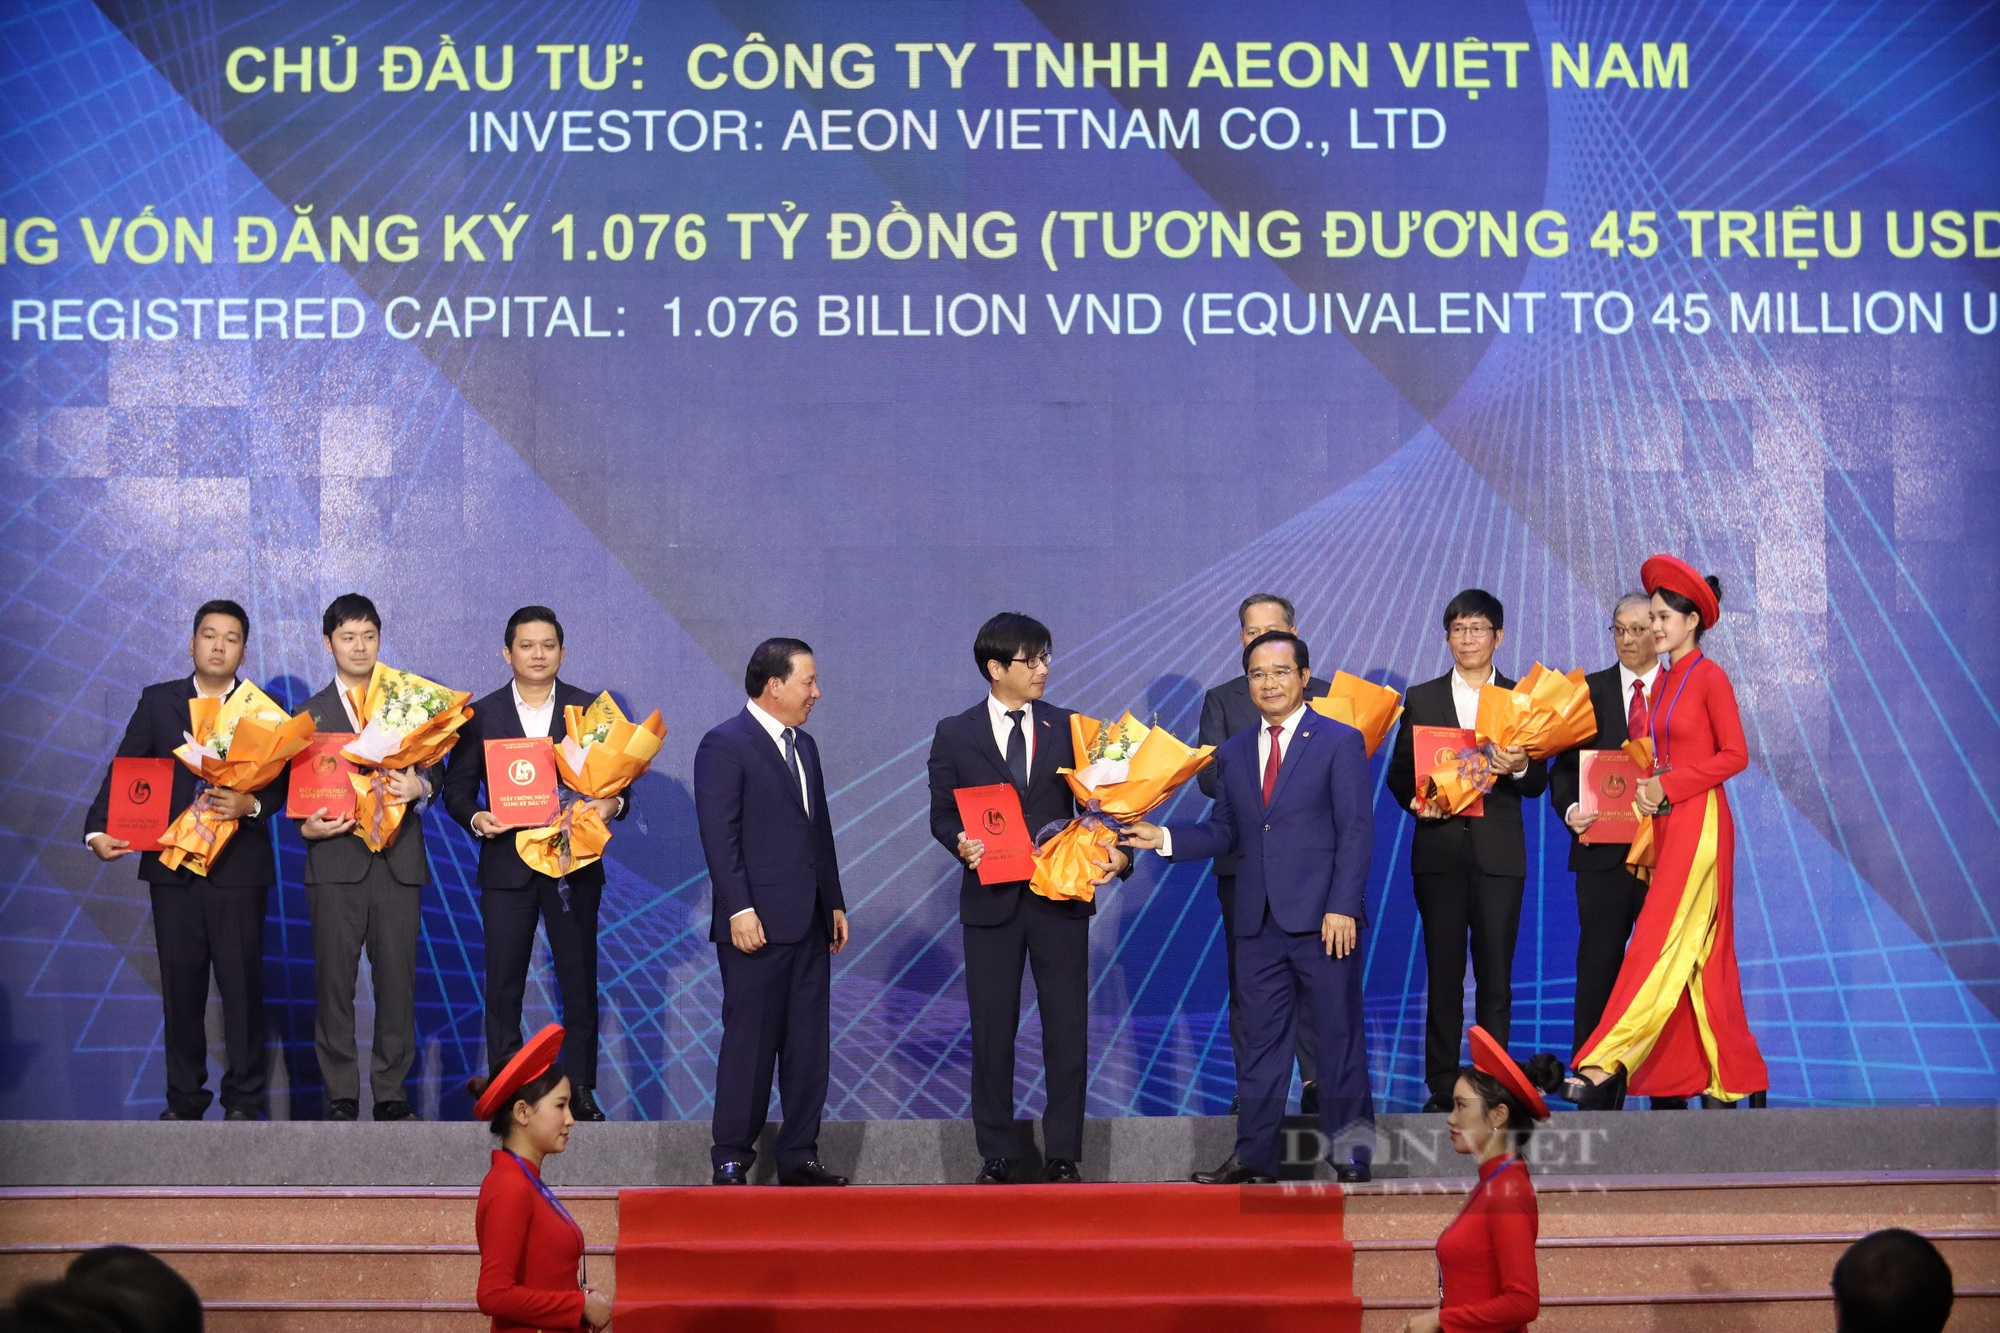 Thủ tướng chính phủ Phạm Minh Chính kỳ vọng những thế mạnh của tỉnh Long An khi công bố kế hoạch xúc tiền đầu tư - Ảnh 5.